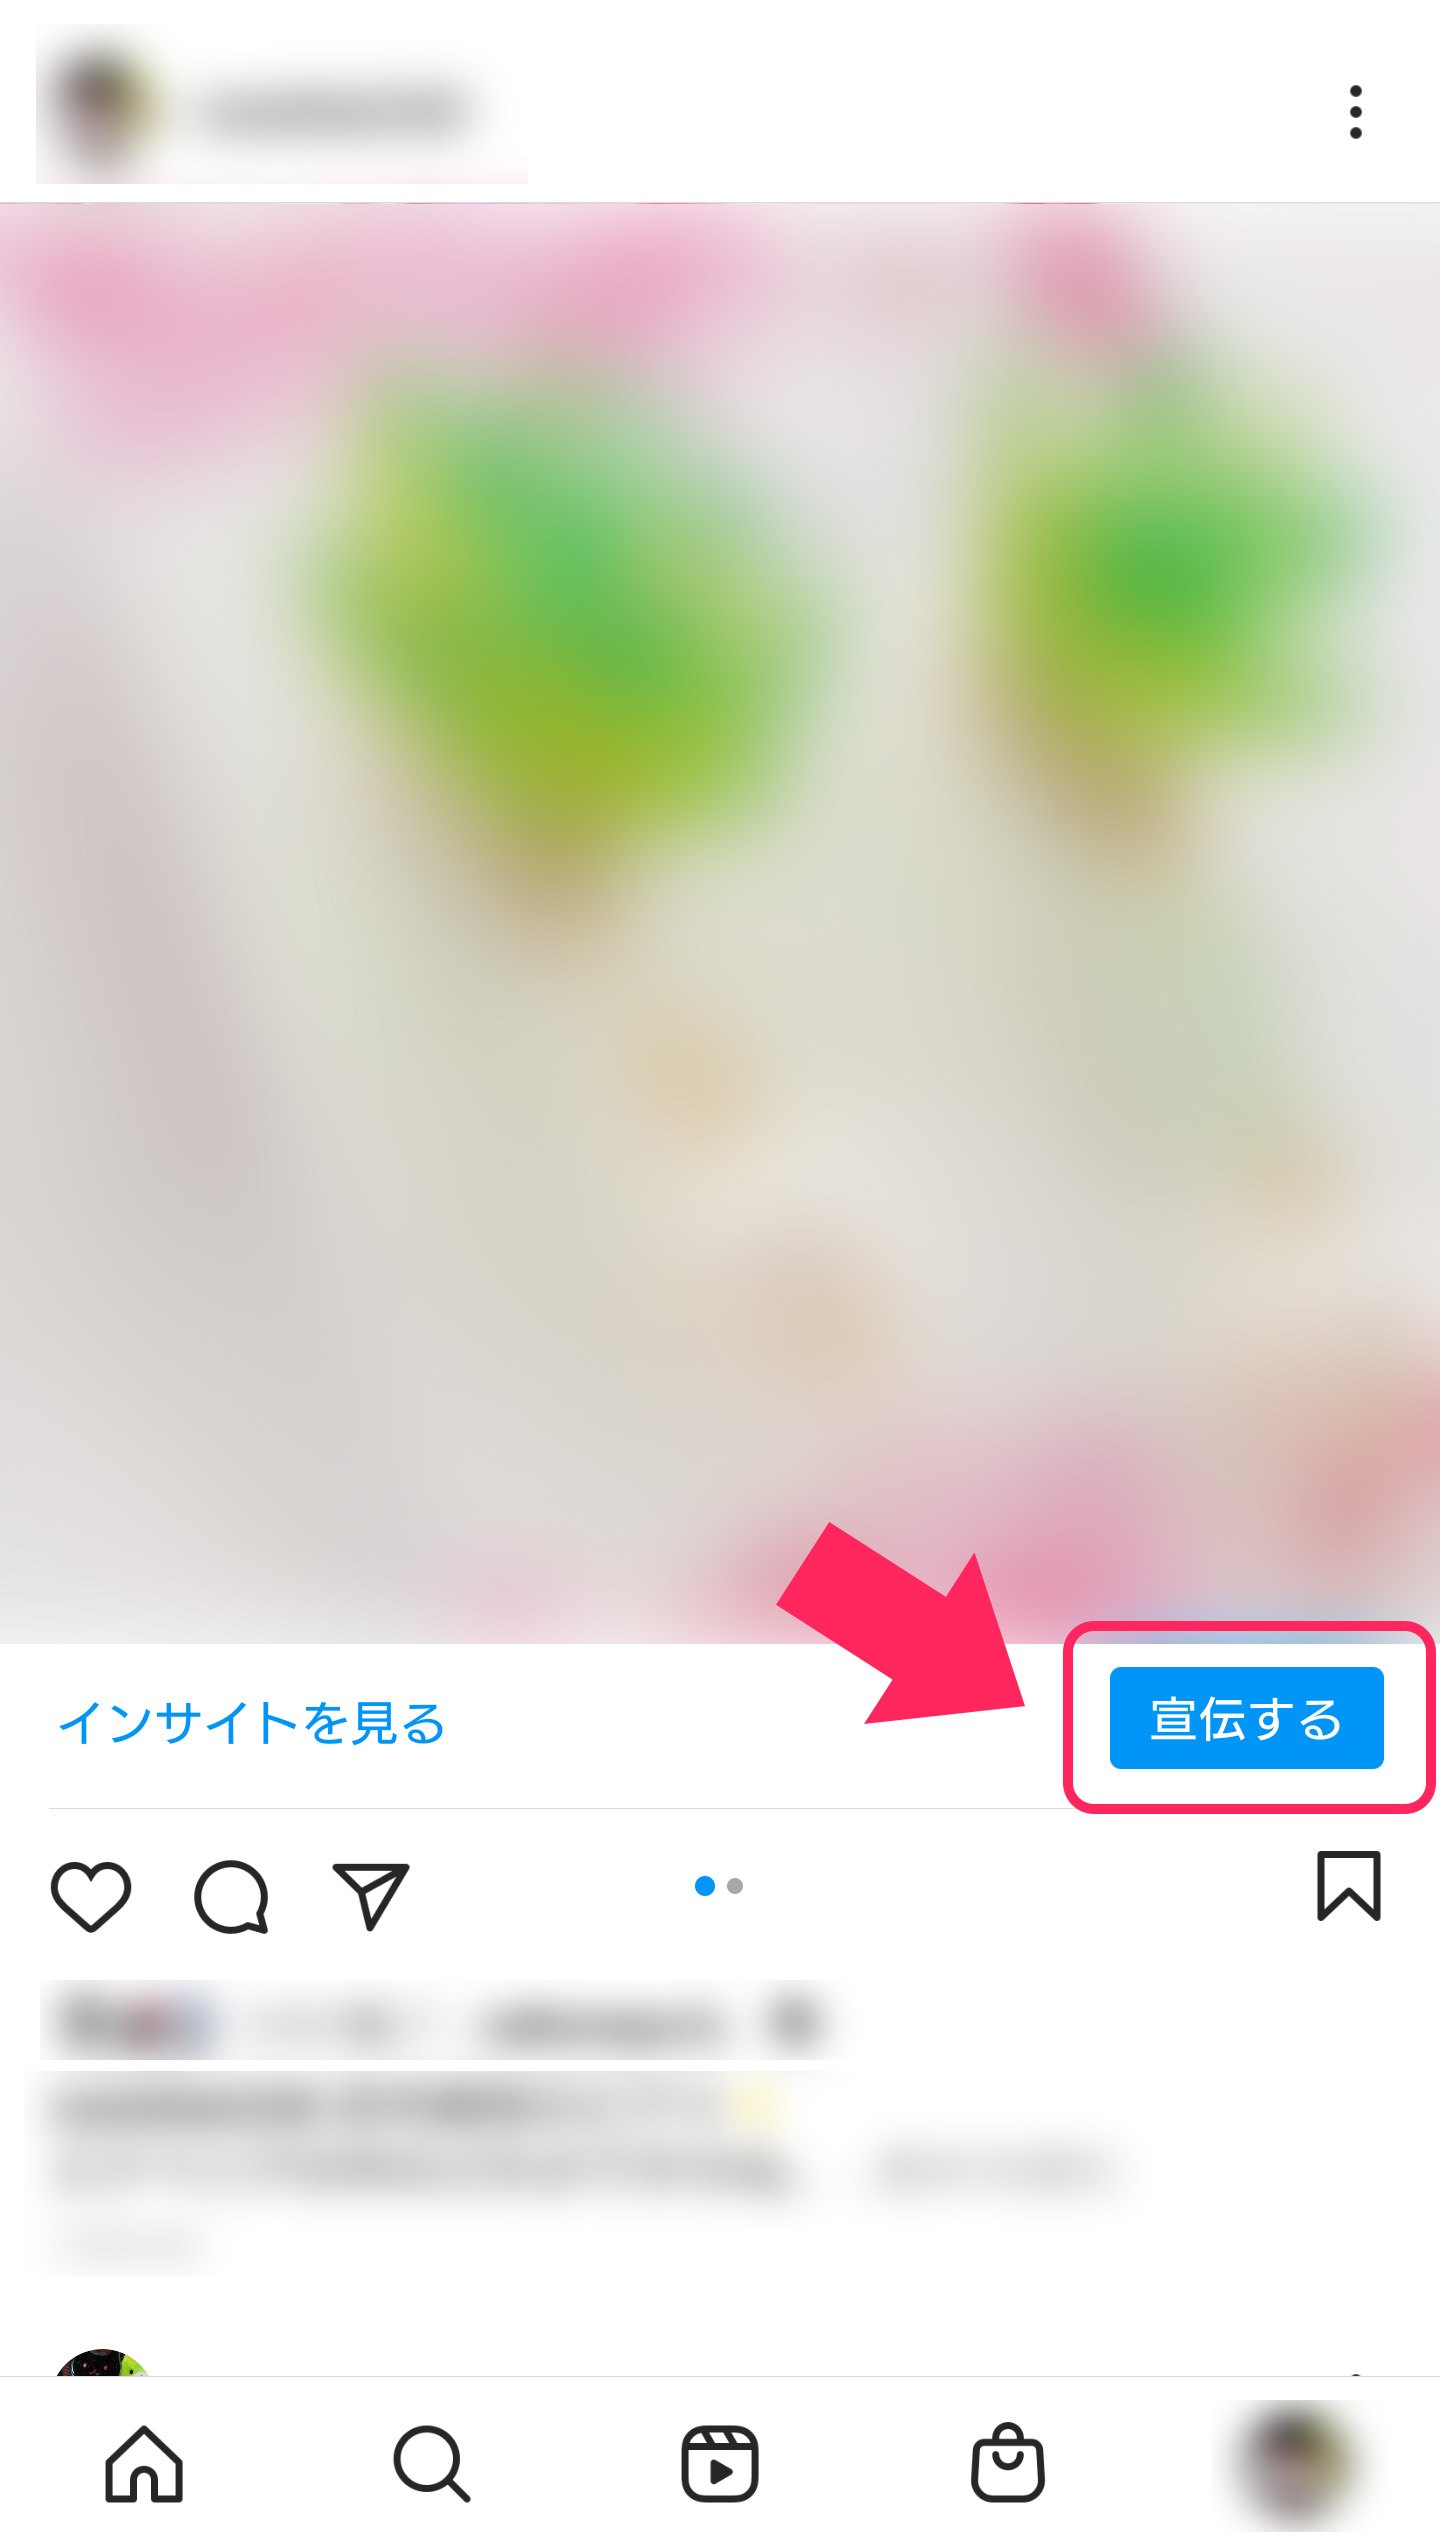 Instagramの広告作成方法。投稿の右下に宣伝するボタンがある。